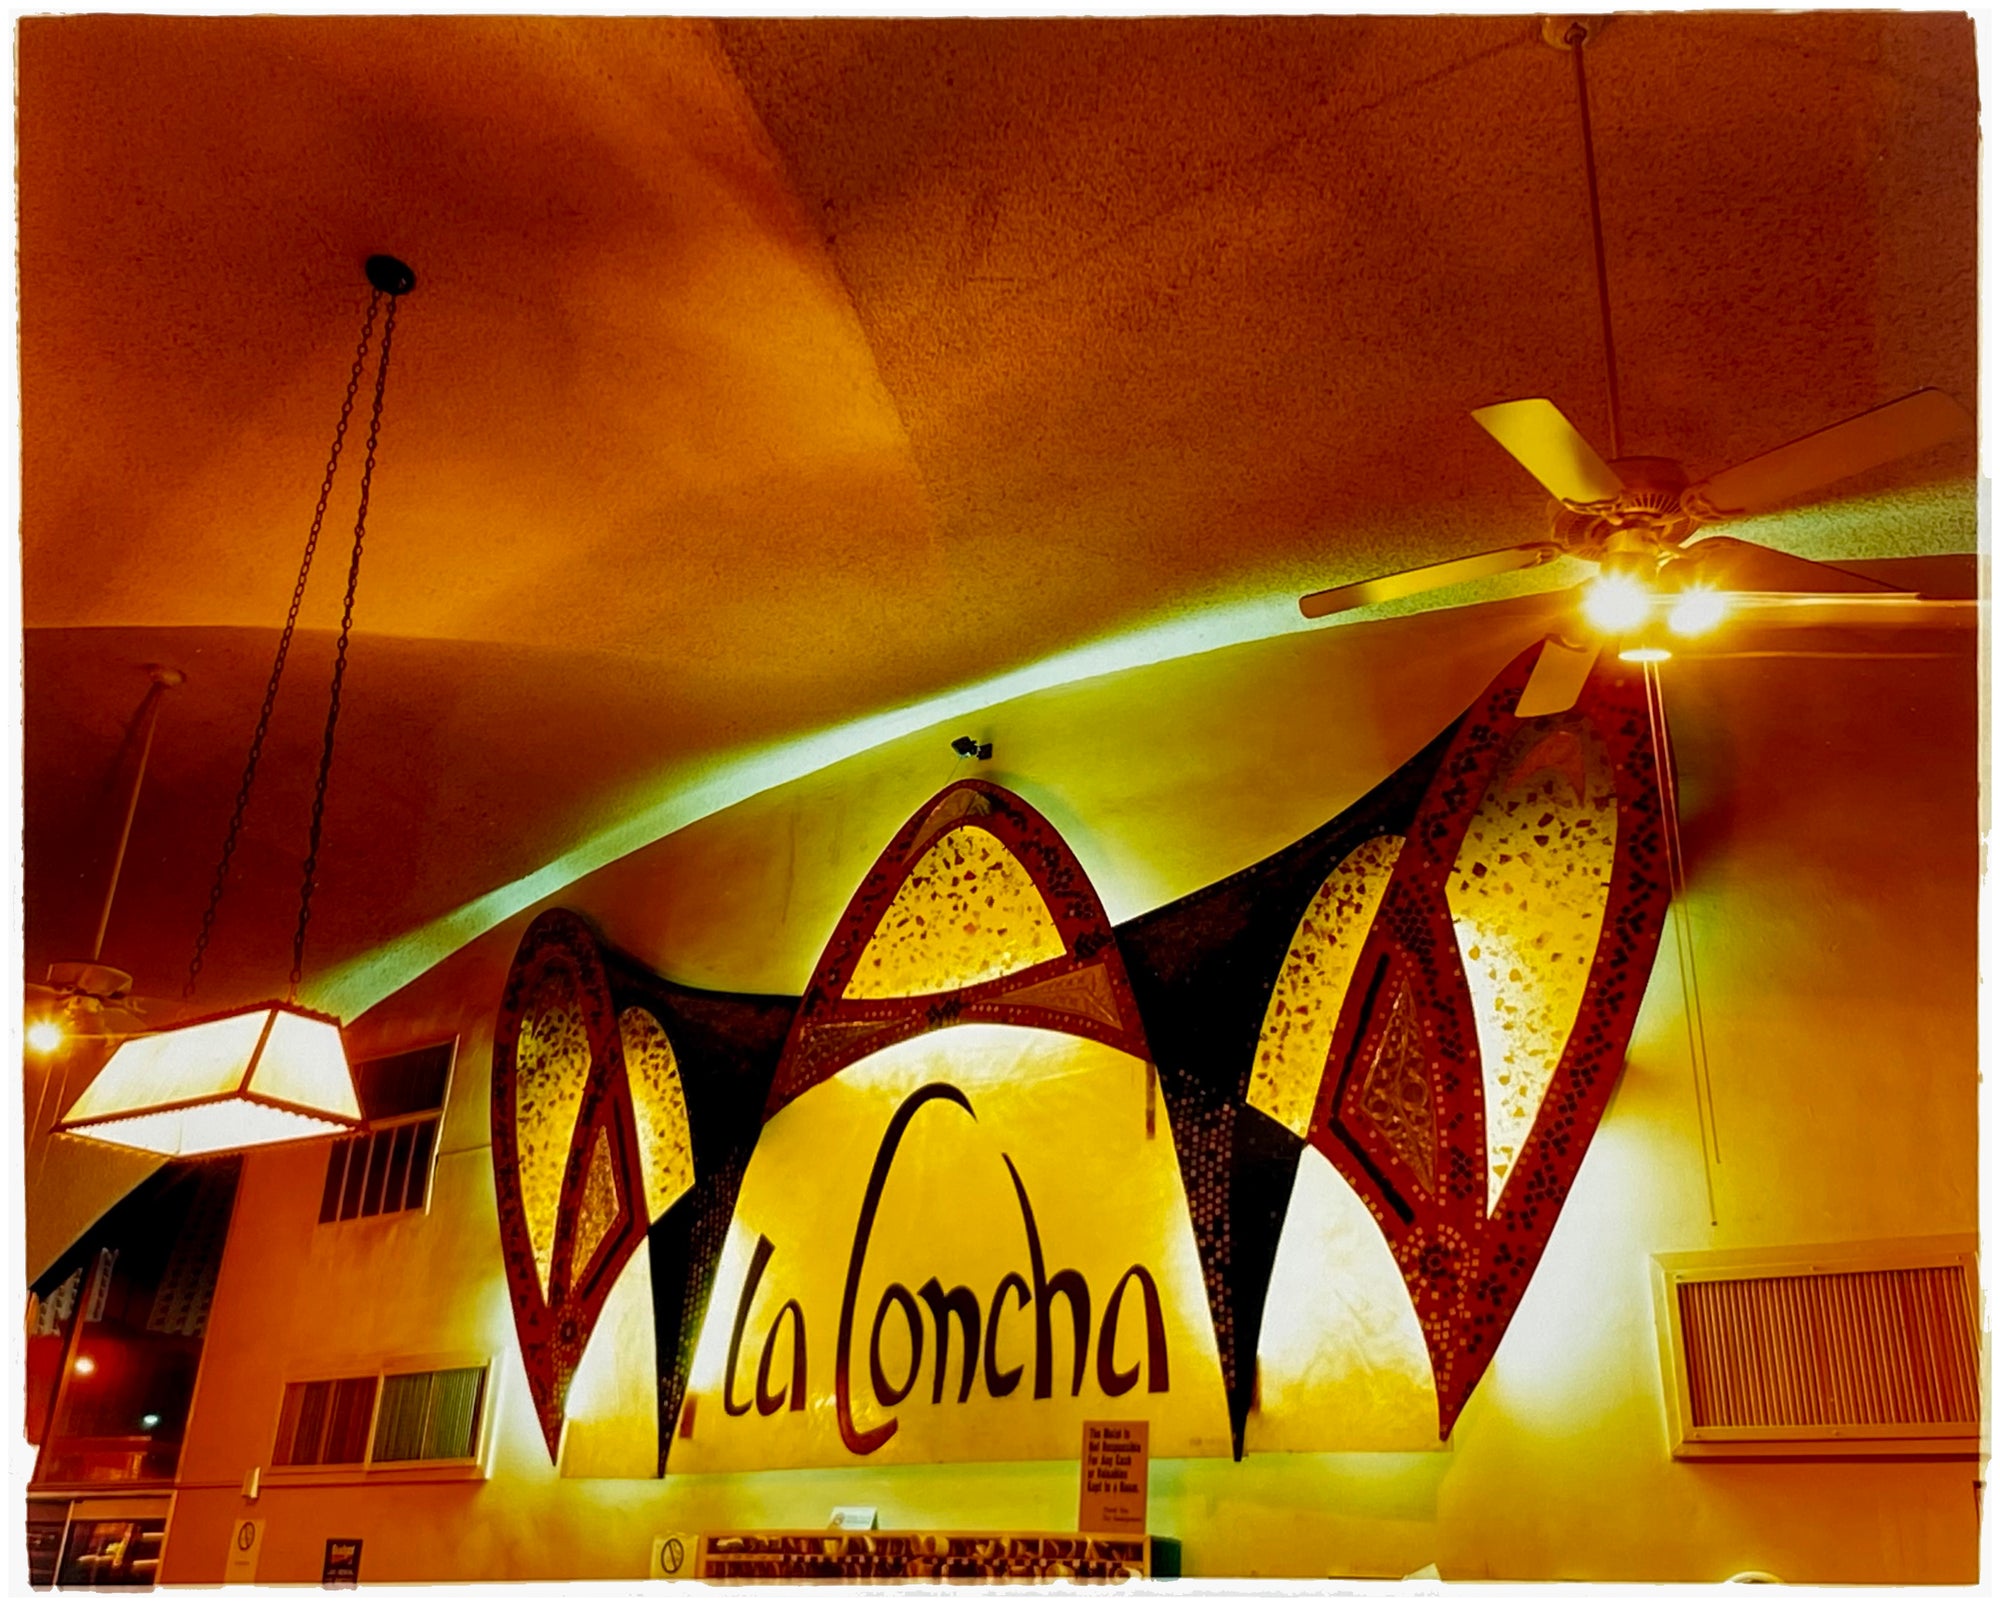 La Concha Sign - Lobby, Las Vegas, 2001